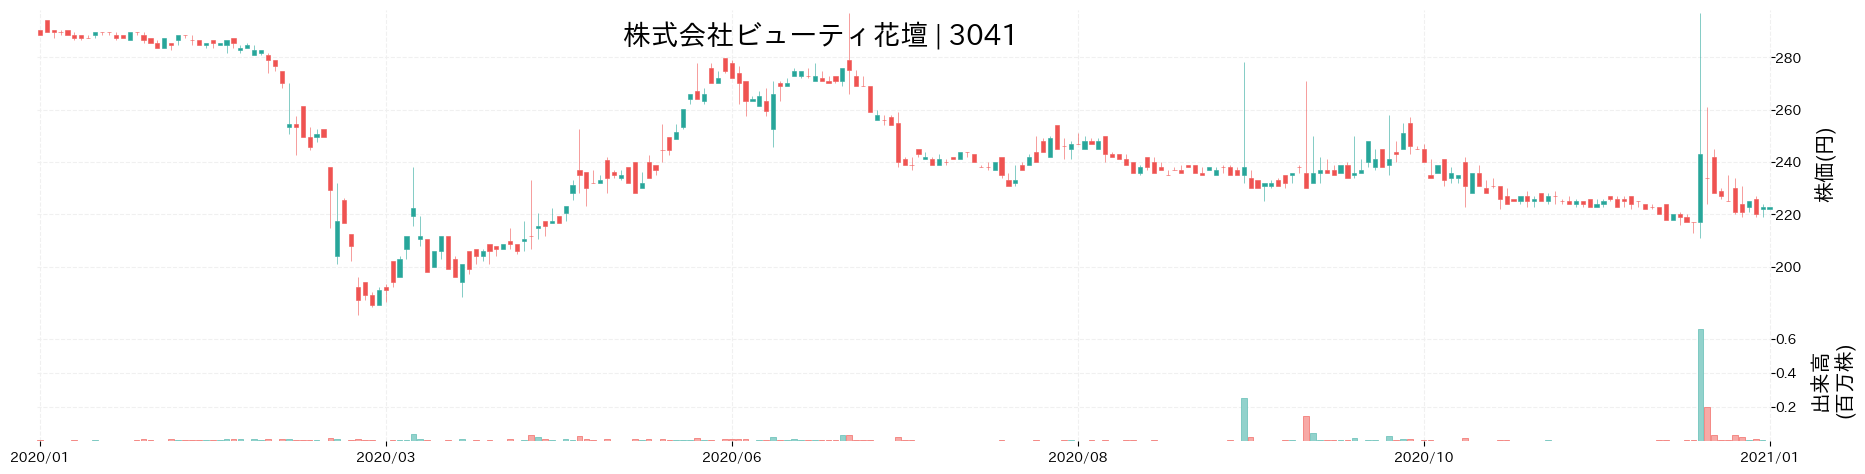 ビューティ花壇の株価推移(2020)